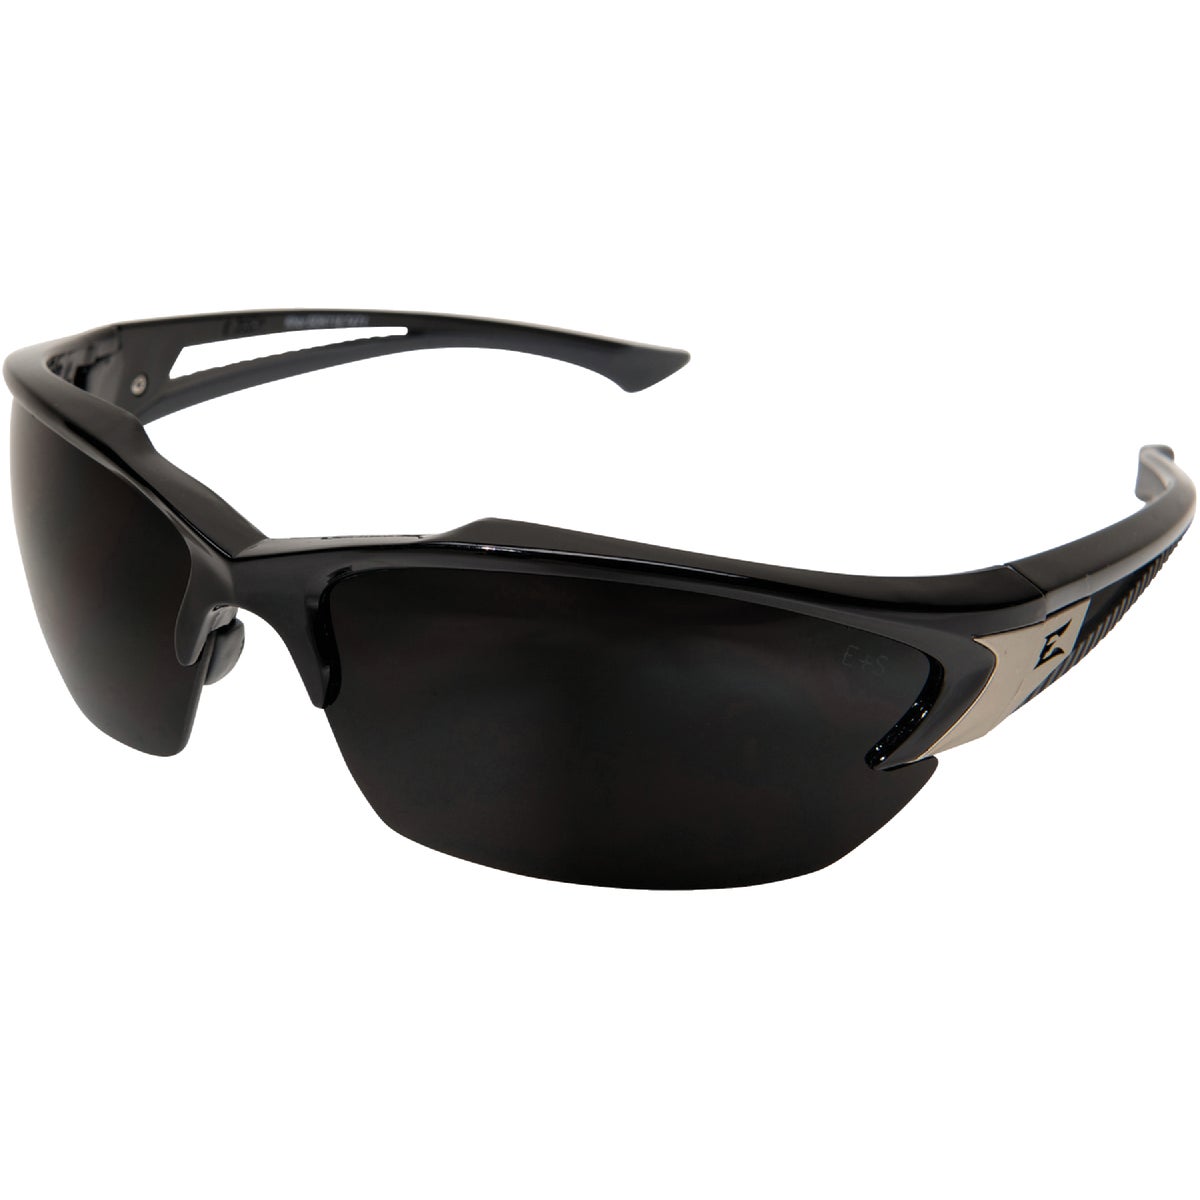 Edge Eyewear Khor G2 Gloss Black Frame Safety Glasses with Smoke Lenses